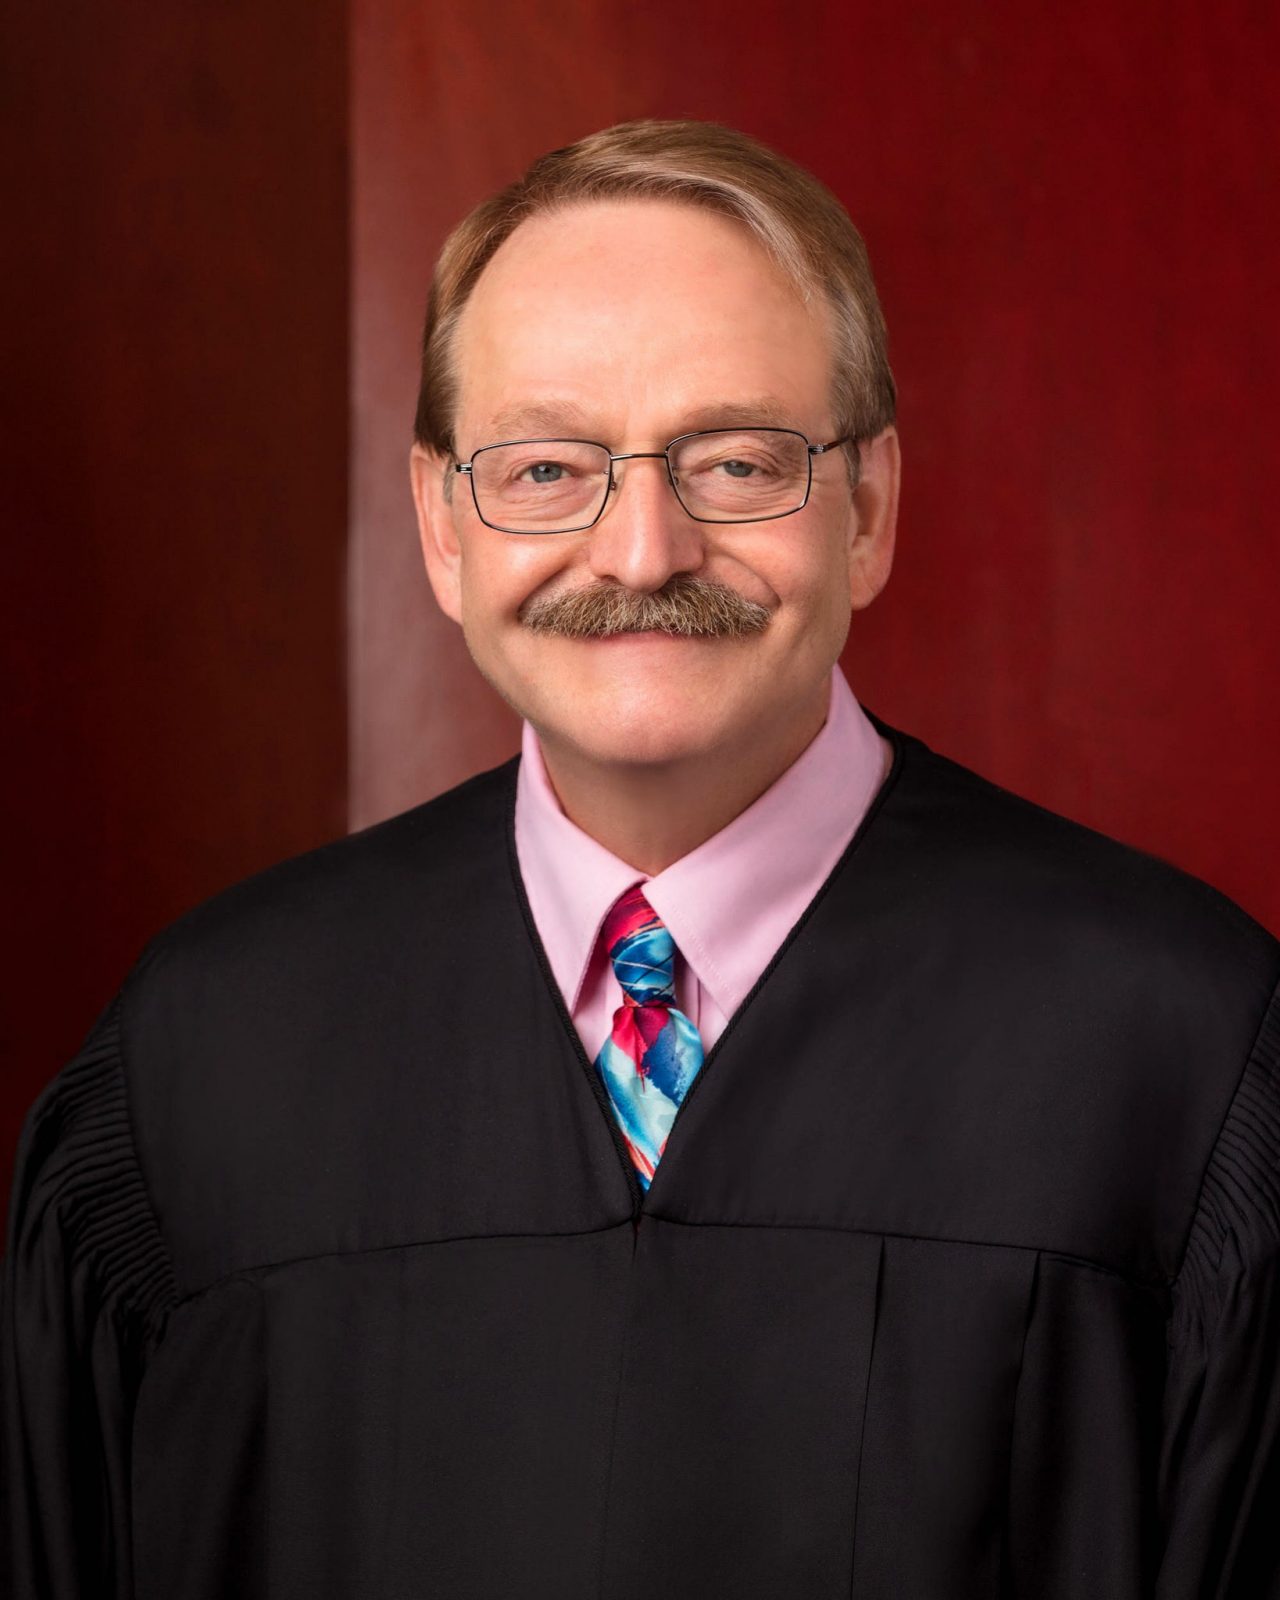 Judge Gregory K. Orme